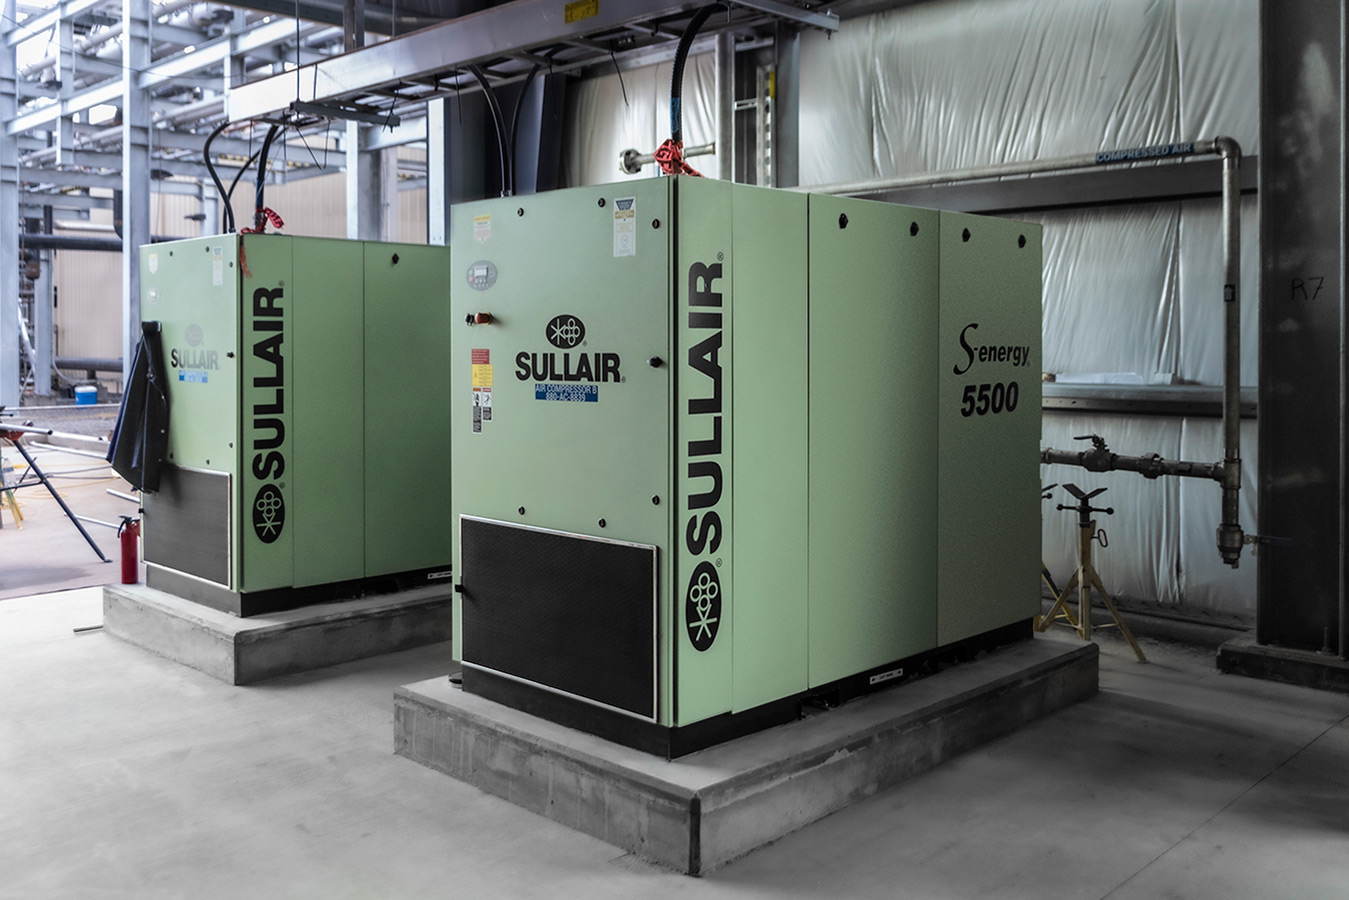 Instalación de un compresor de aire industrial S-energy 5500 de Sullair